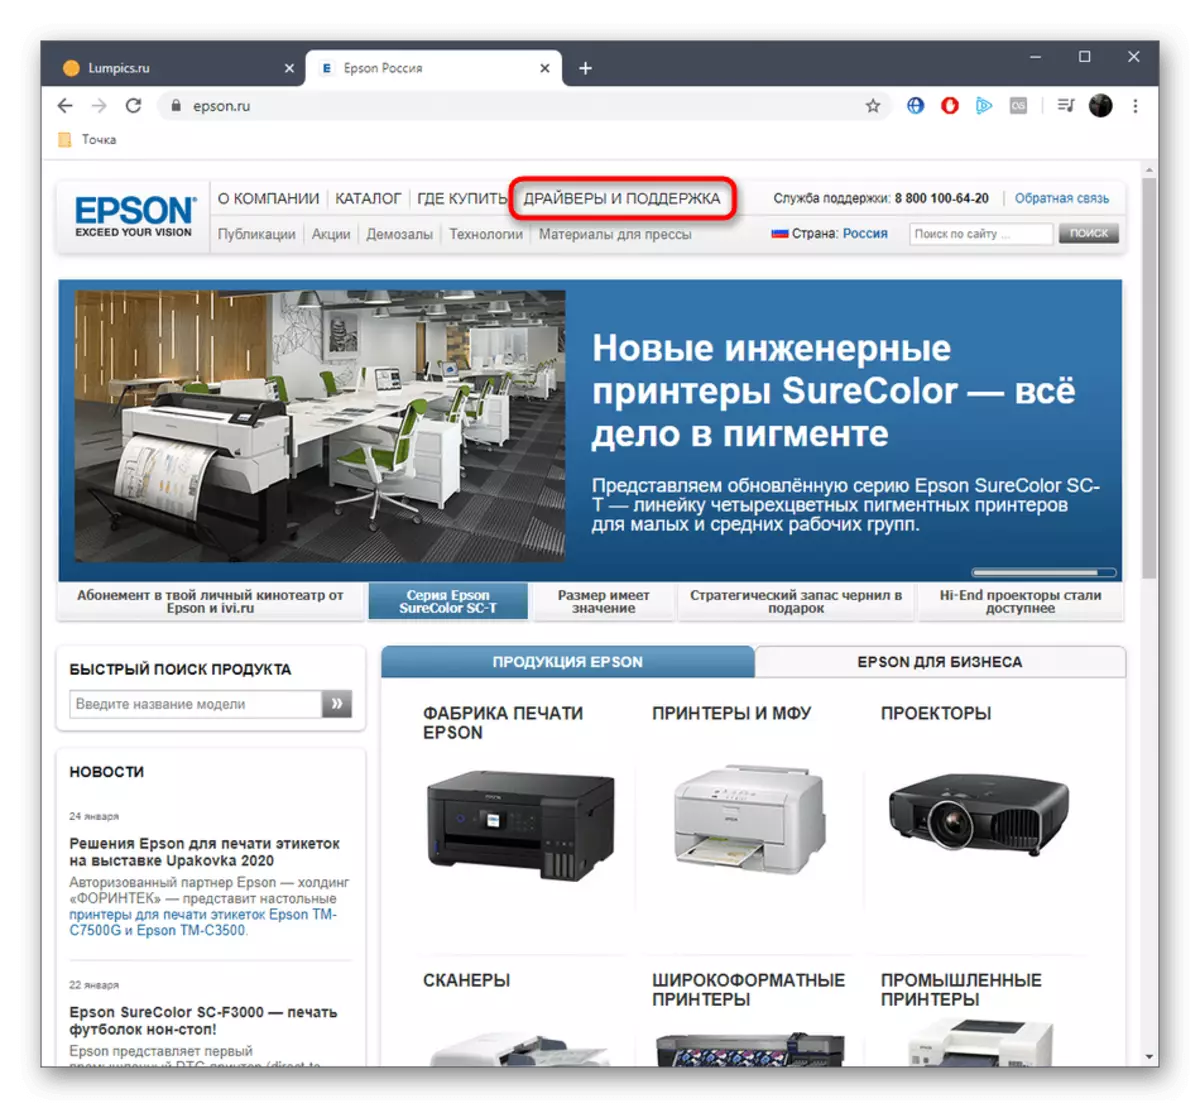 공식 웹 사이트에서 Epson Stylus Photo PX660 드라이버를 다운로드하기위한 지원 섹션으로 전환하십시오.